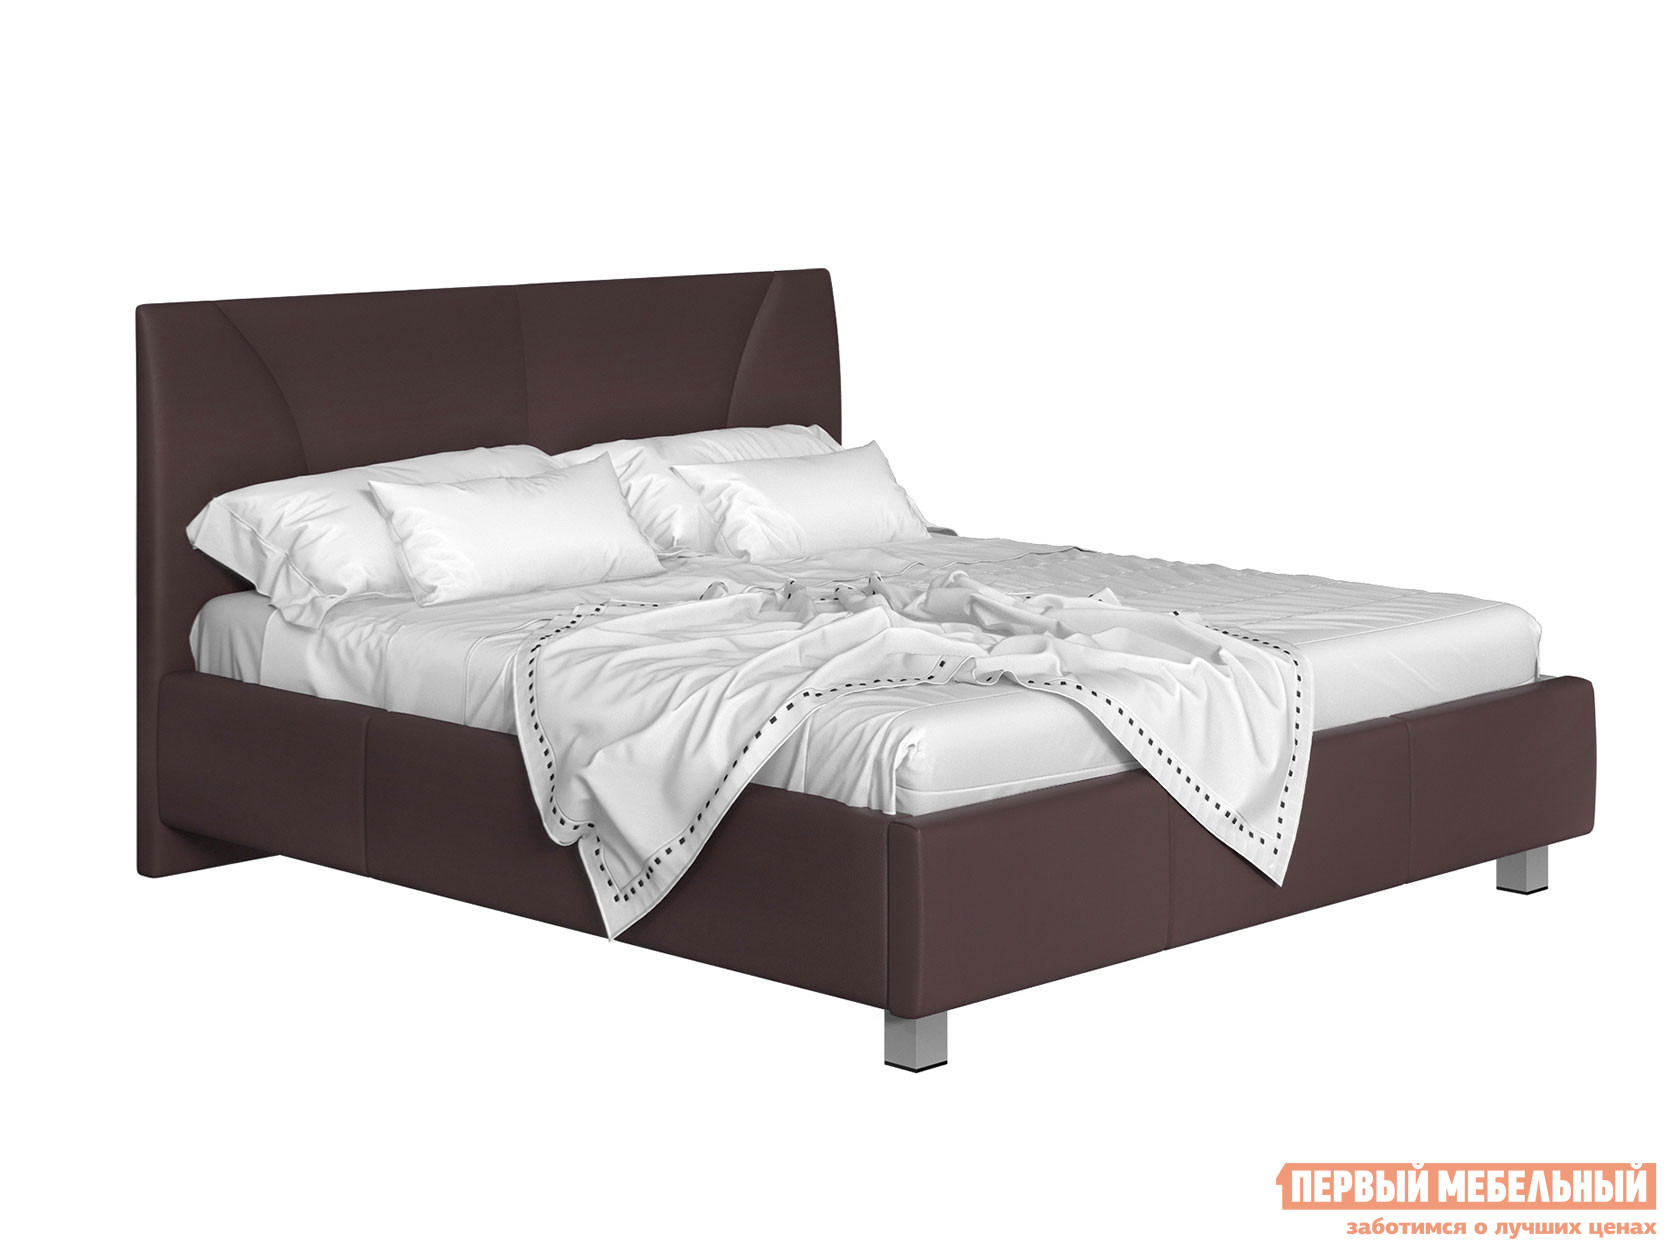 Двуспальная кровать  с подъемным механизмом Севилья Коричневый, экокожа, 140х200 см Первый Мебельный 99832